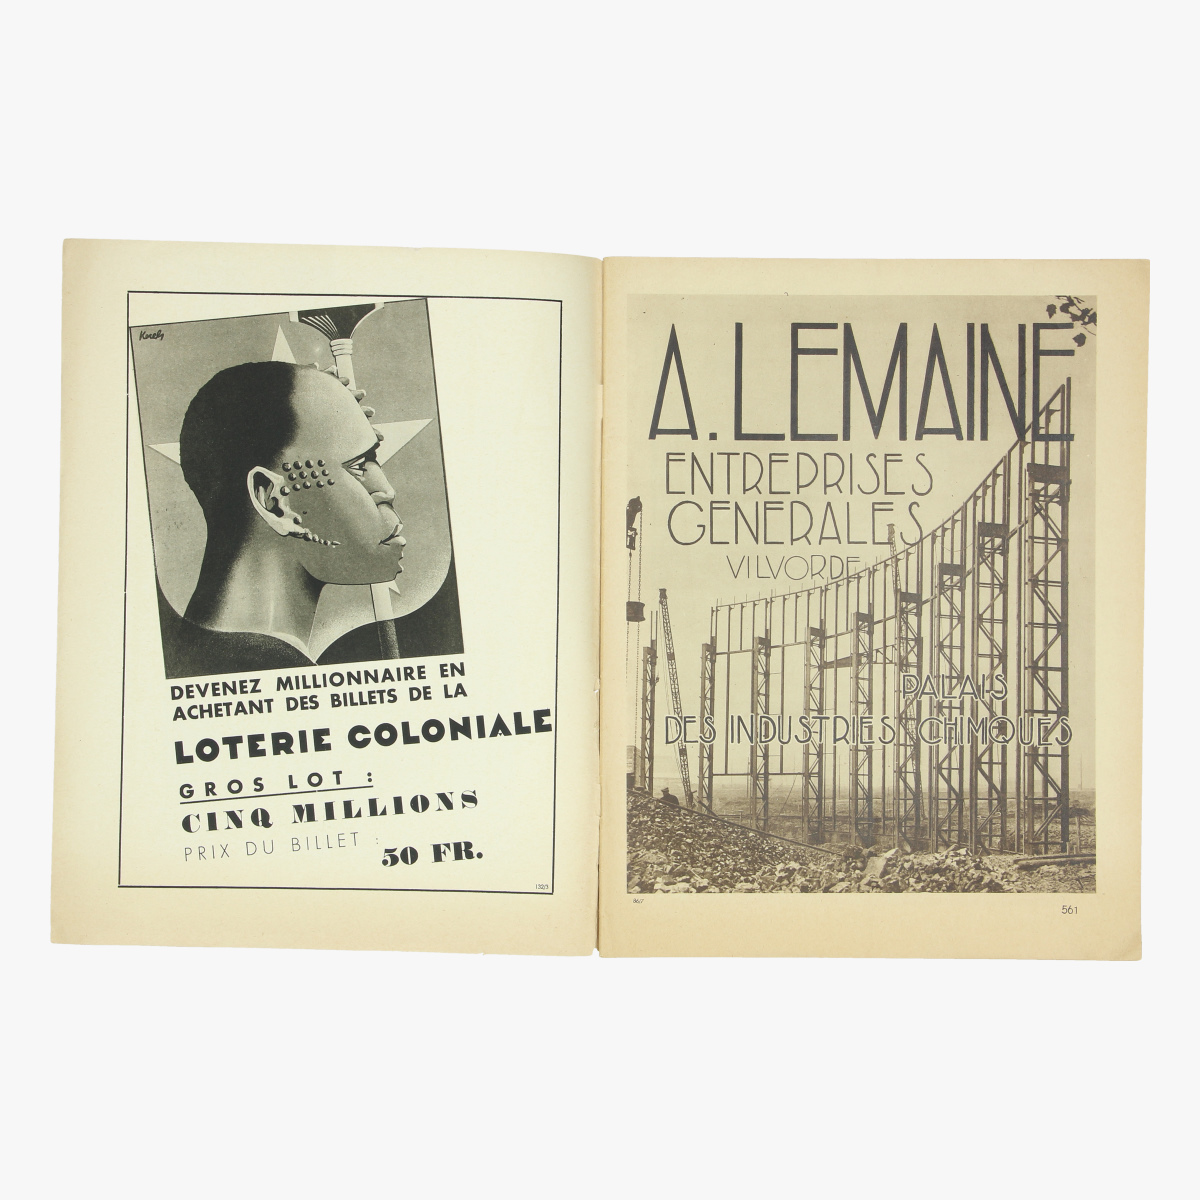 Afbeeldingen van wereldtentoonstelling 1935 officieel blad der algemeene